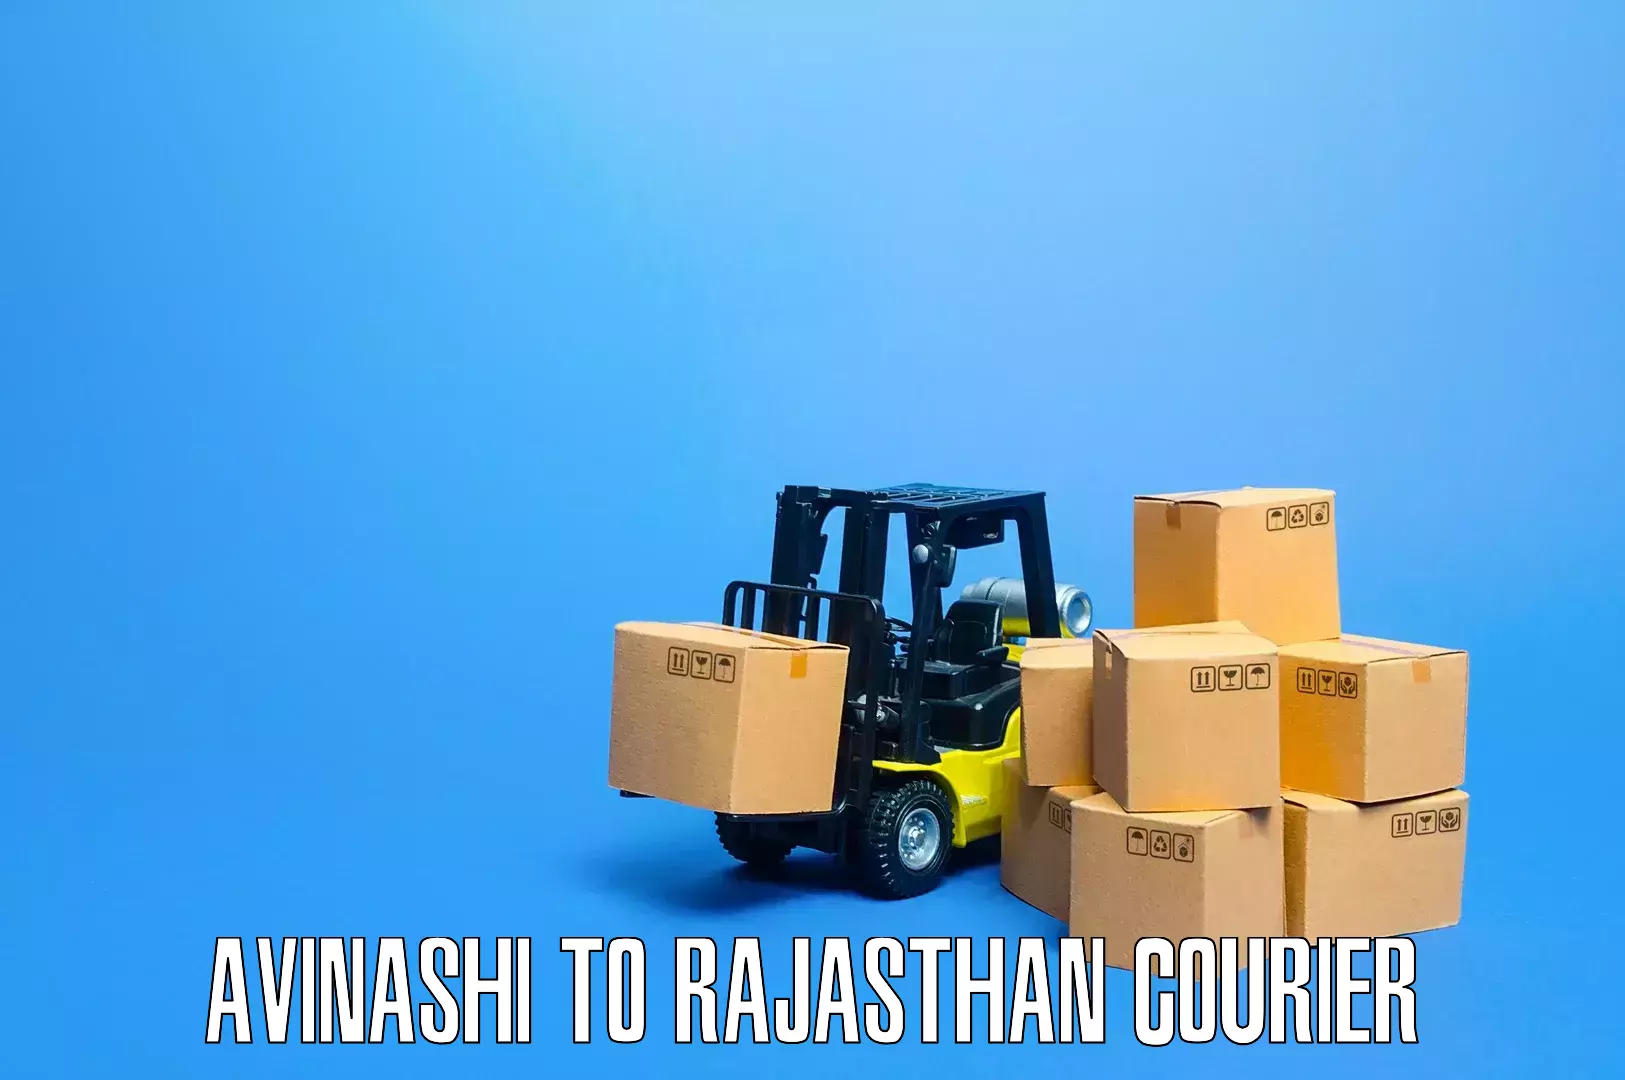 Affordable household movers Avinashi to Bayana